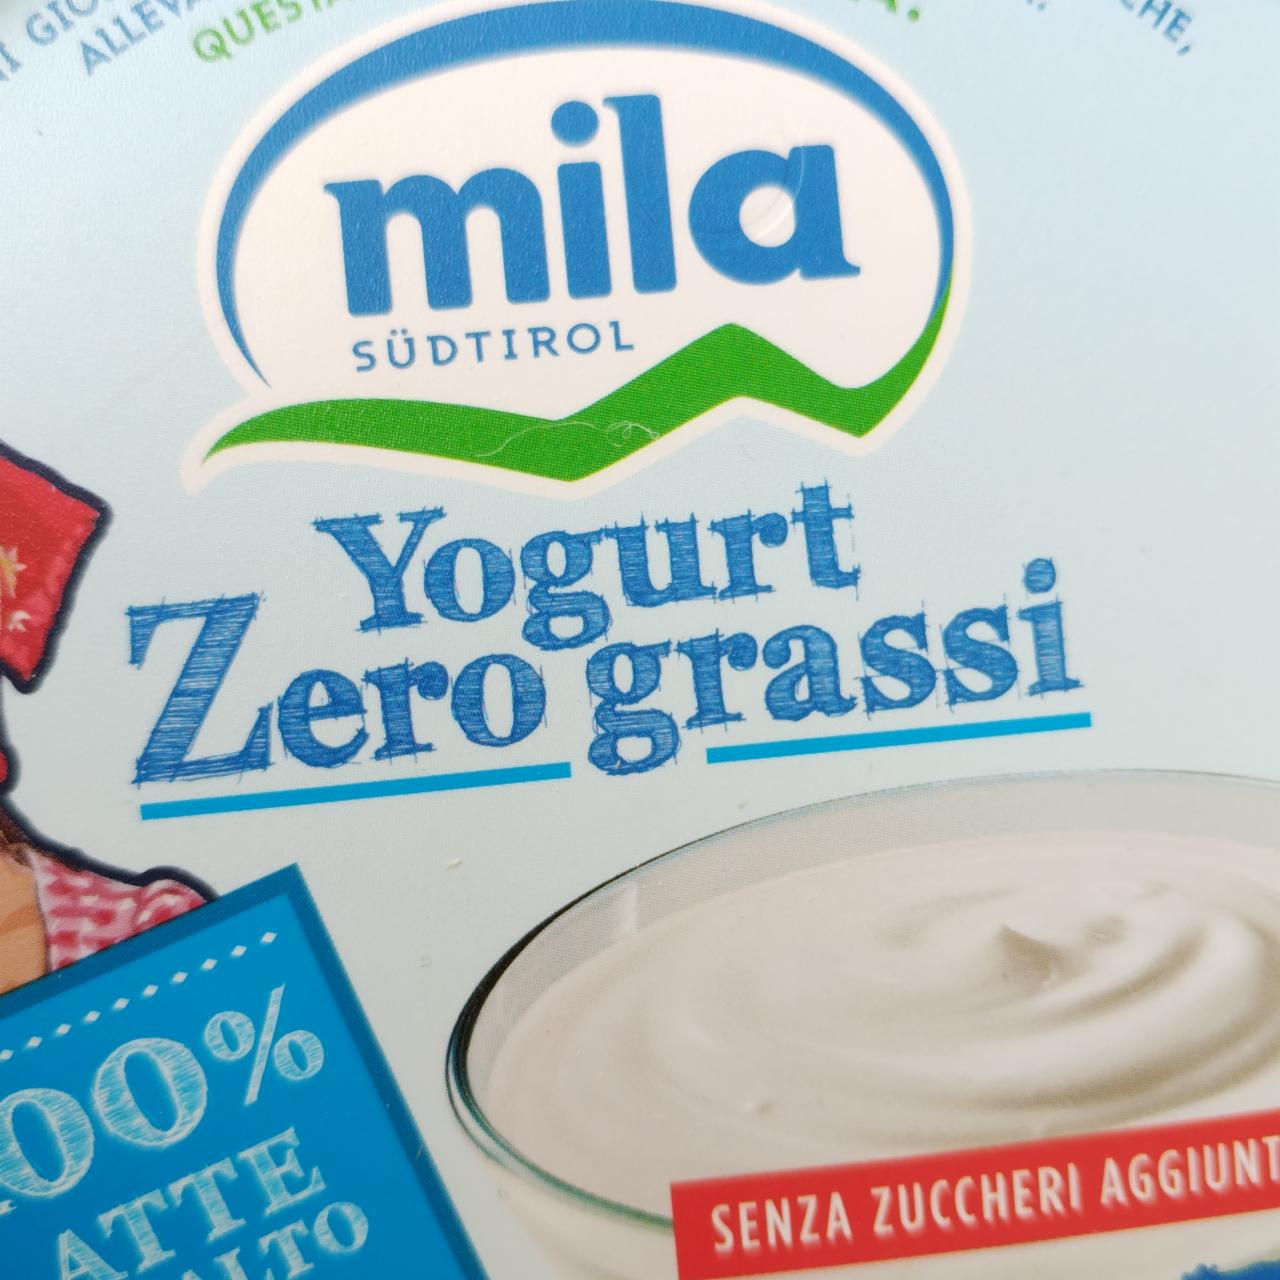 Fotografie - Yogurt Zero grassi Mila Südtirol